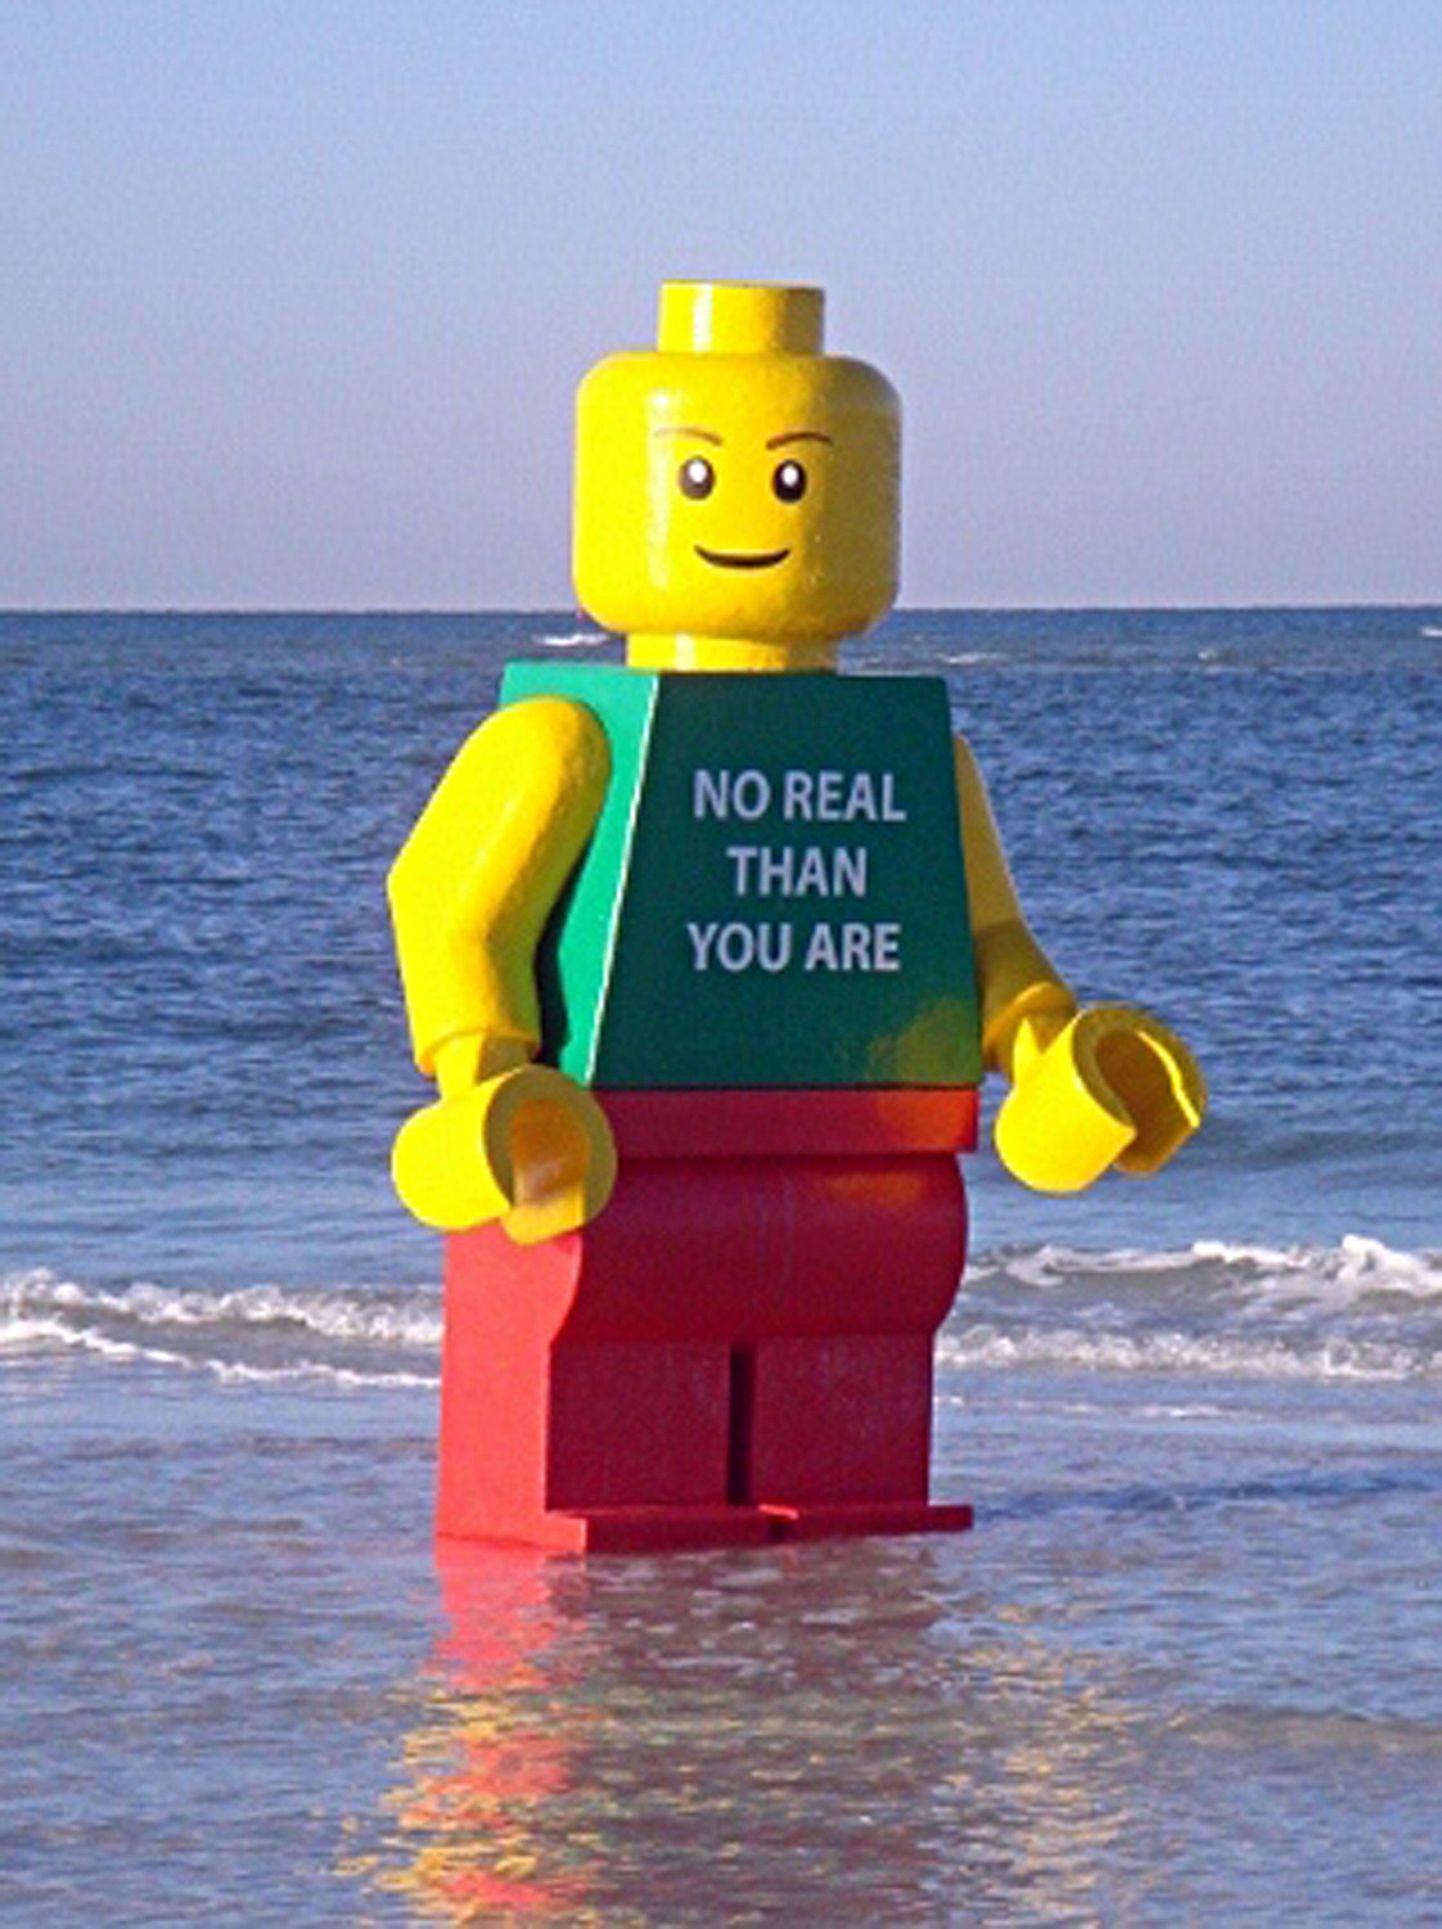 Klaaskiust valmistatud Lego-kuju, mis sel nädalal Florida osariigi rannast leiti.